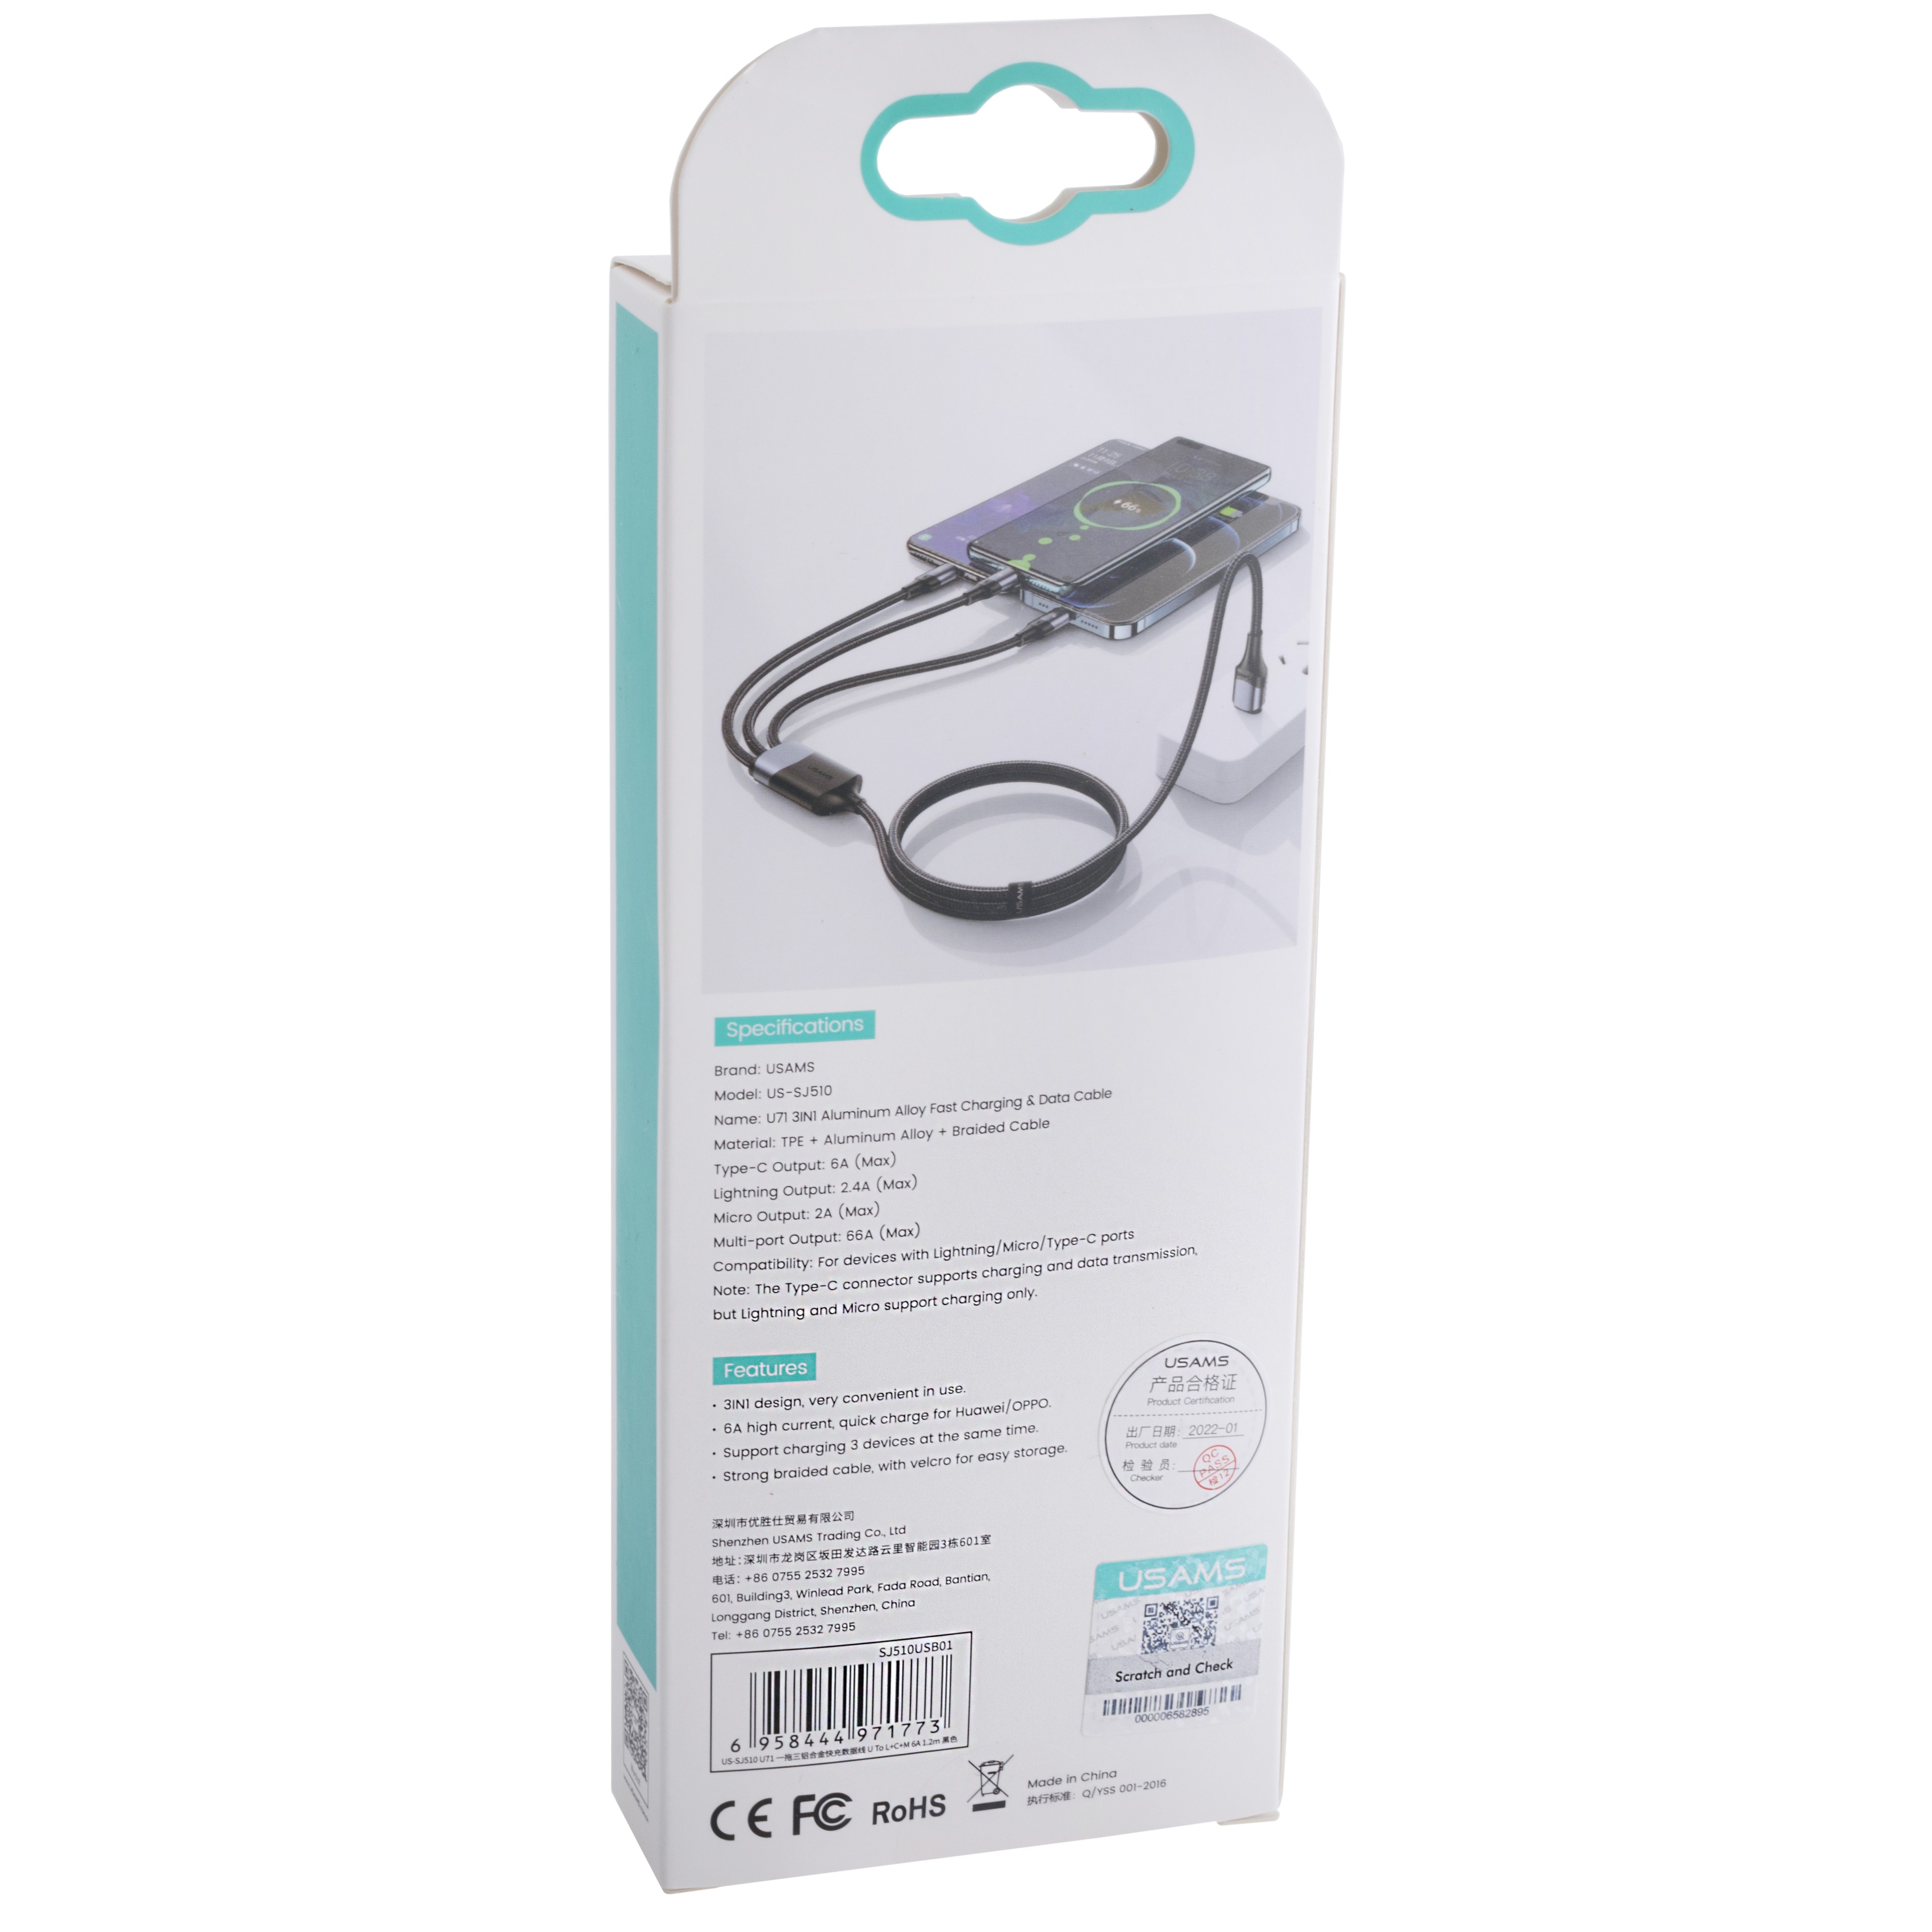 Кабель USB US-SJ510 U71 (USAMS) 3IN1 Aluminum Alloy Fast Charging & Data Cable 6A (USAMS) 1.2м черный